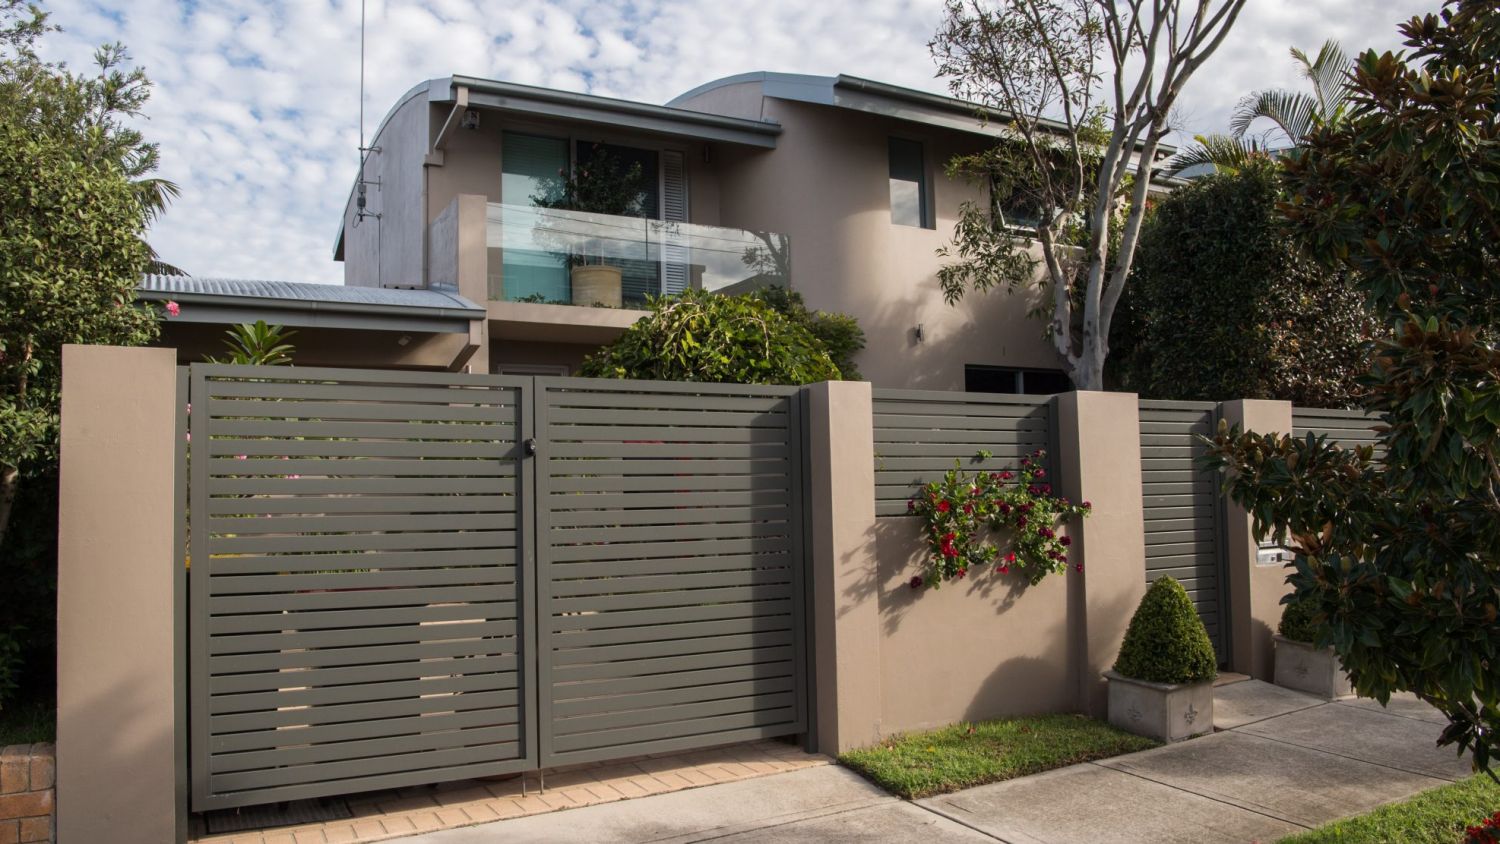 悉尼78个城区中位房价突破200万澳元